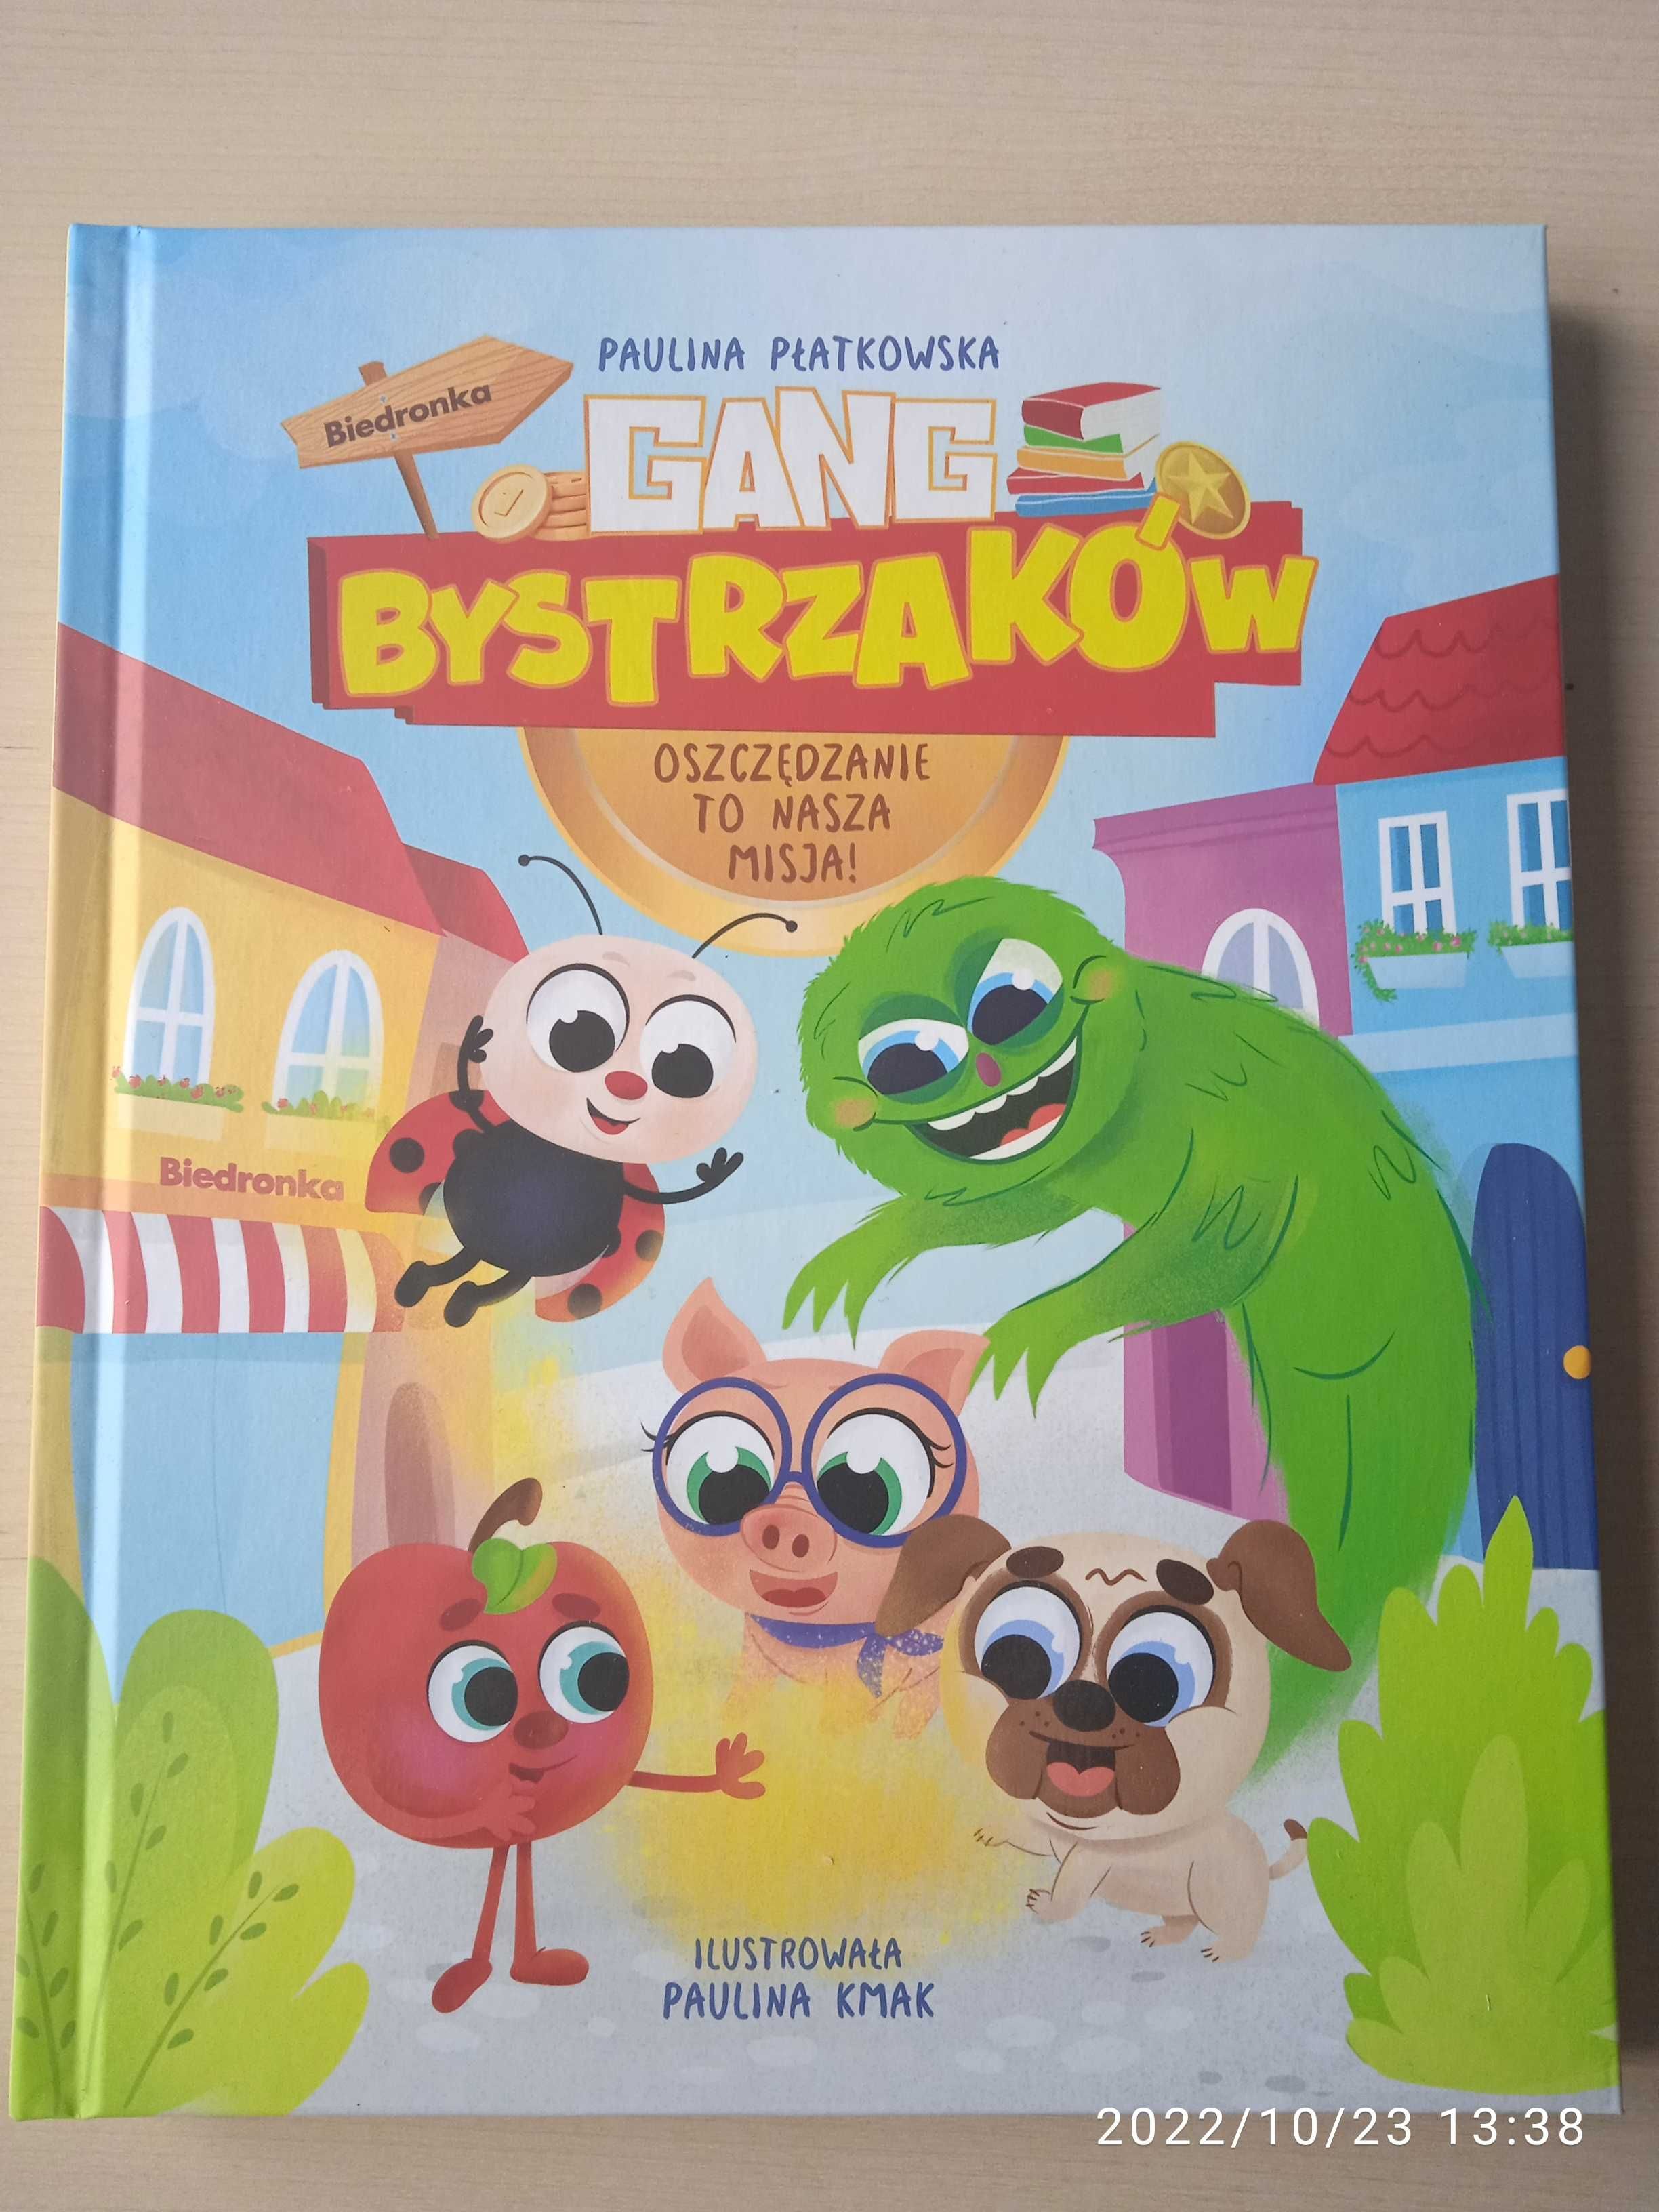 Książka: "Gang Bystrzaków." Biedronka